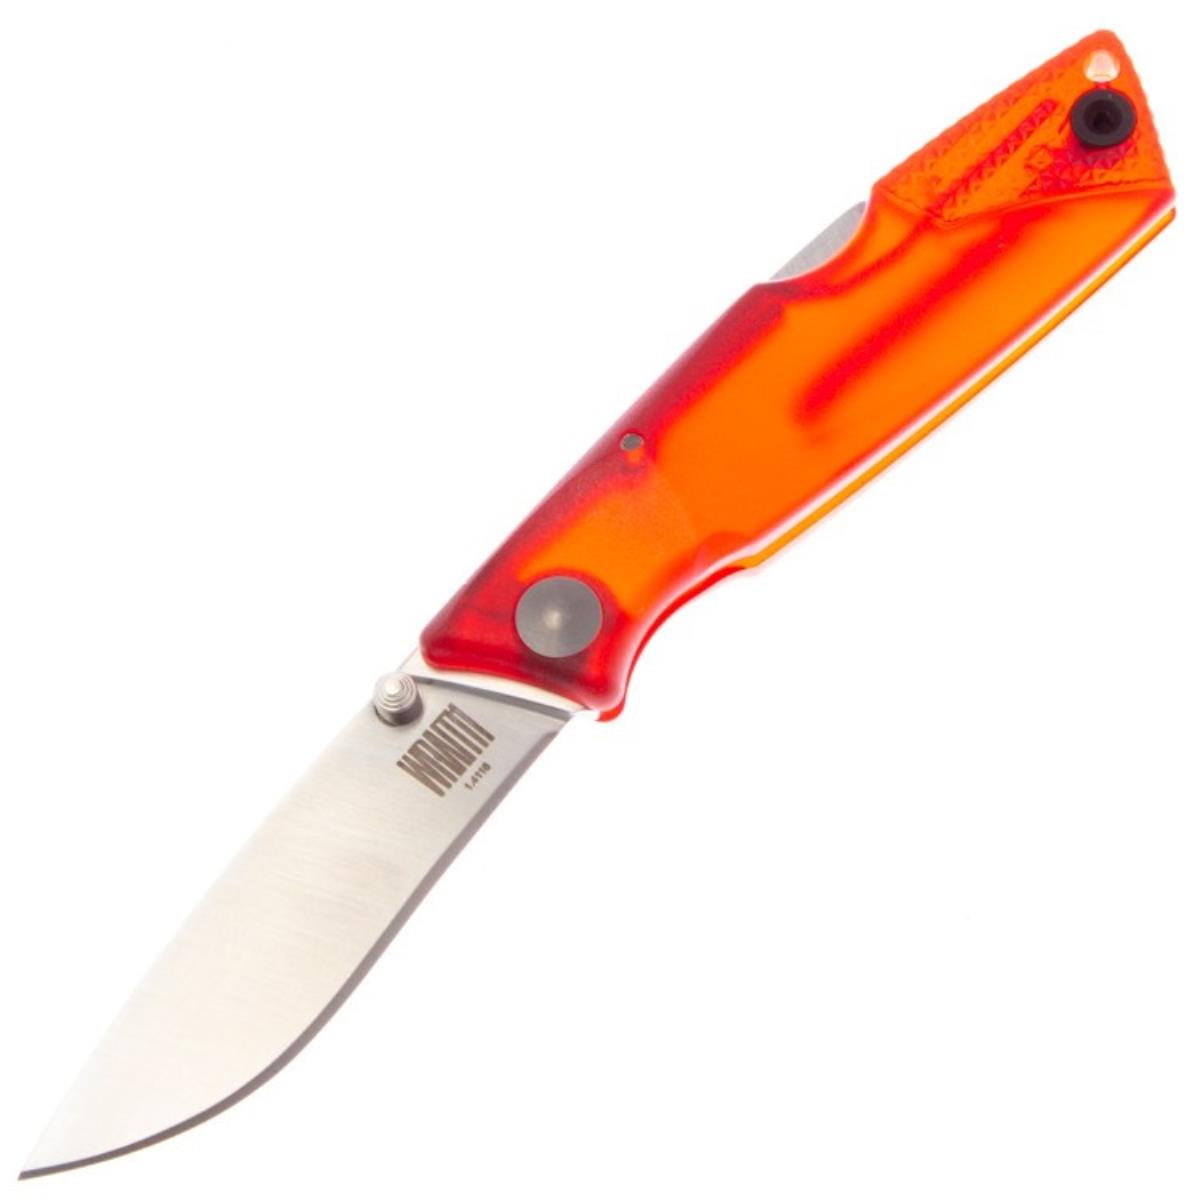 Нож Wraith Ice Series Fire складн.,красная полимерная рукоять, клинок AUS8 (8798RED)  ONTARIO нож складной ontario rat 1 сталь d2 клинок satin рукоять olive grn